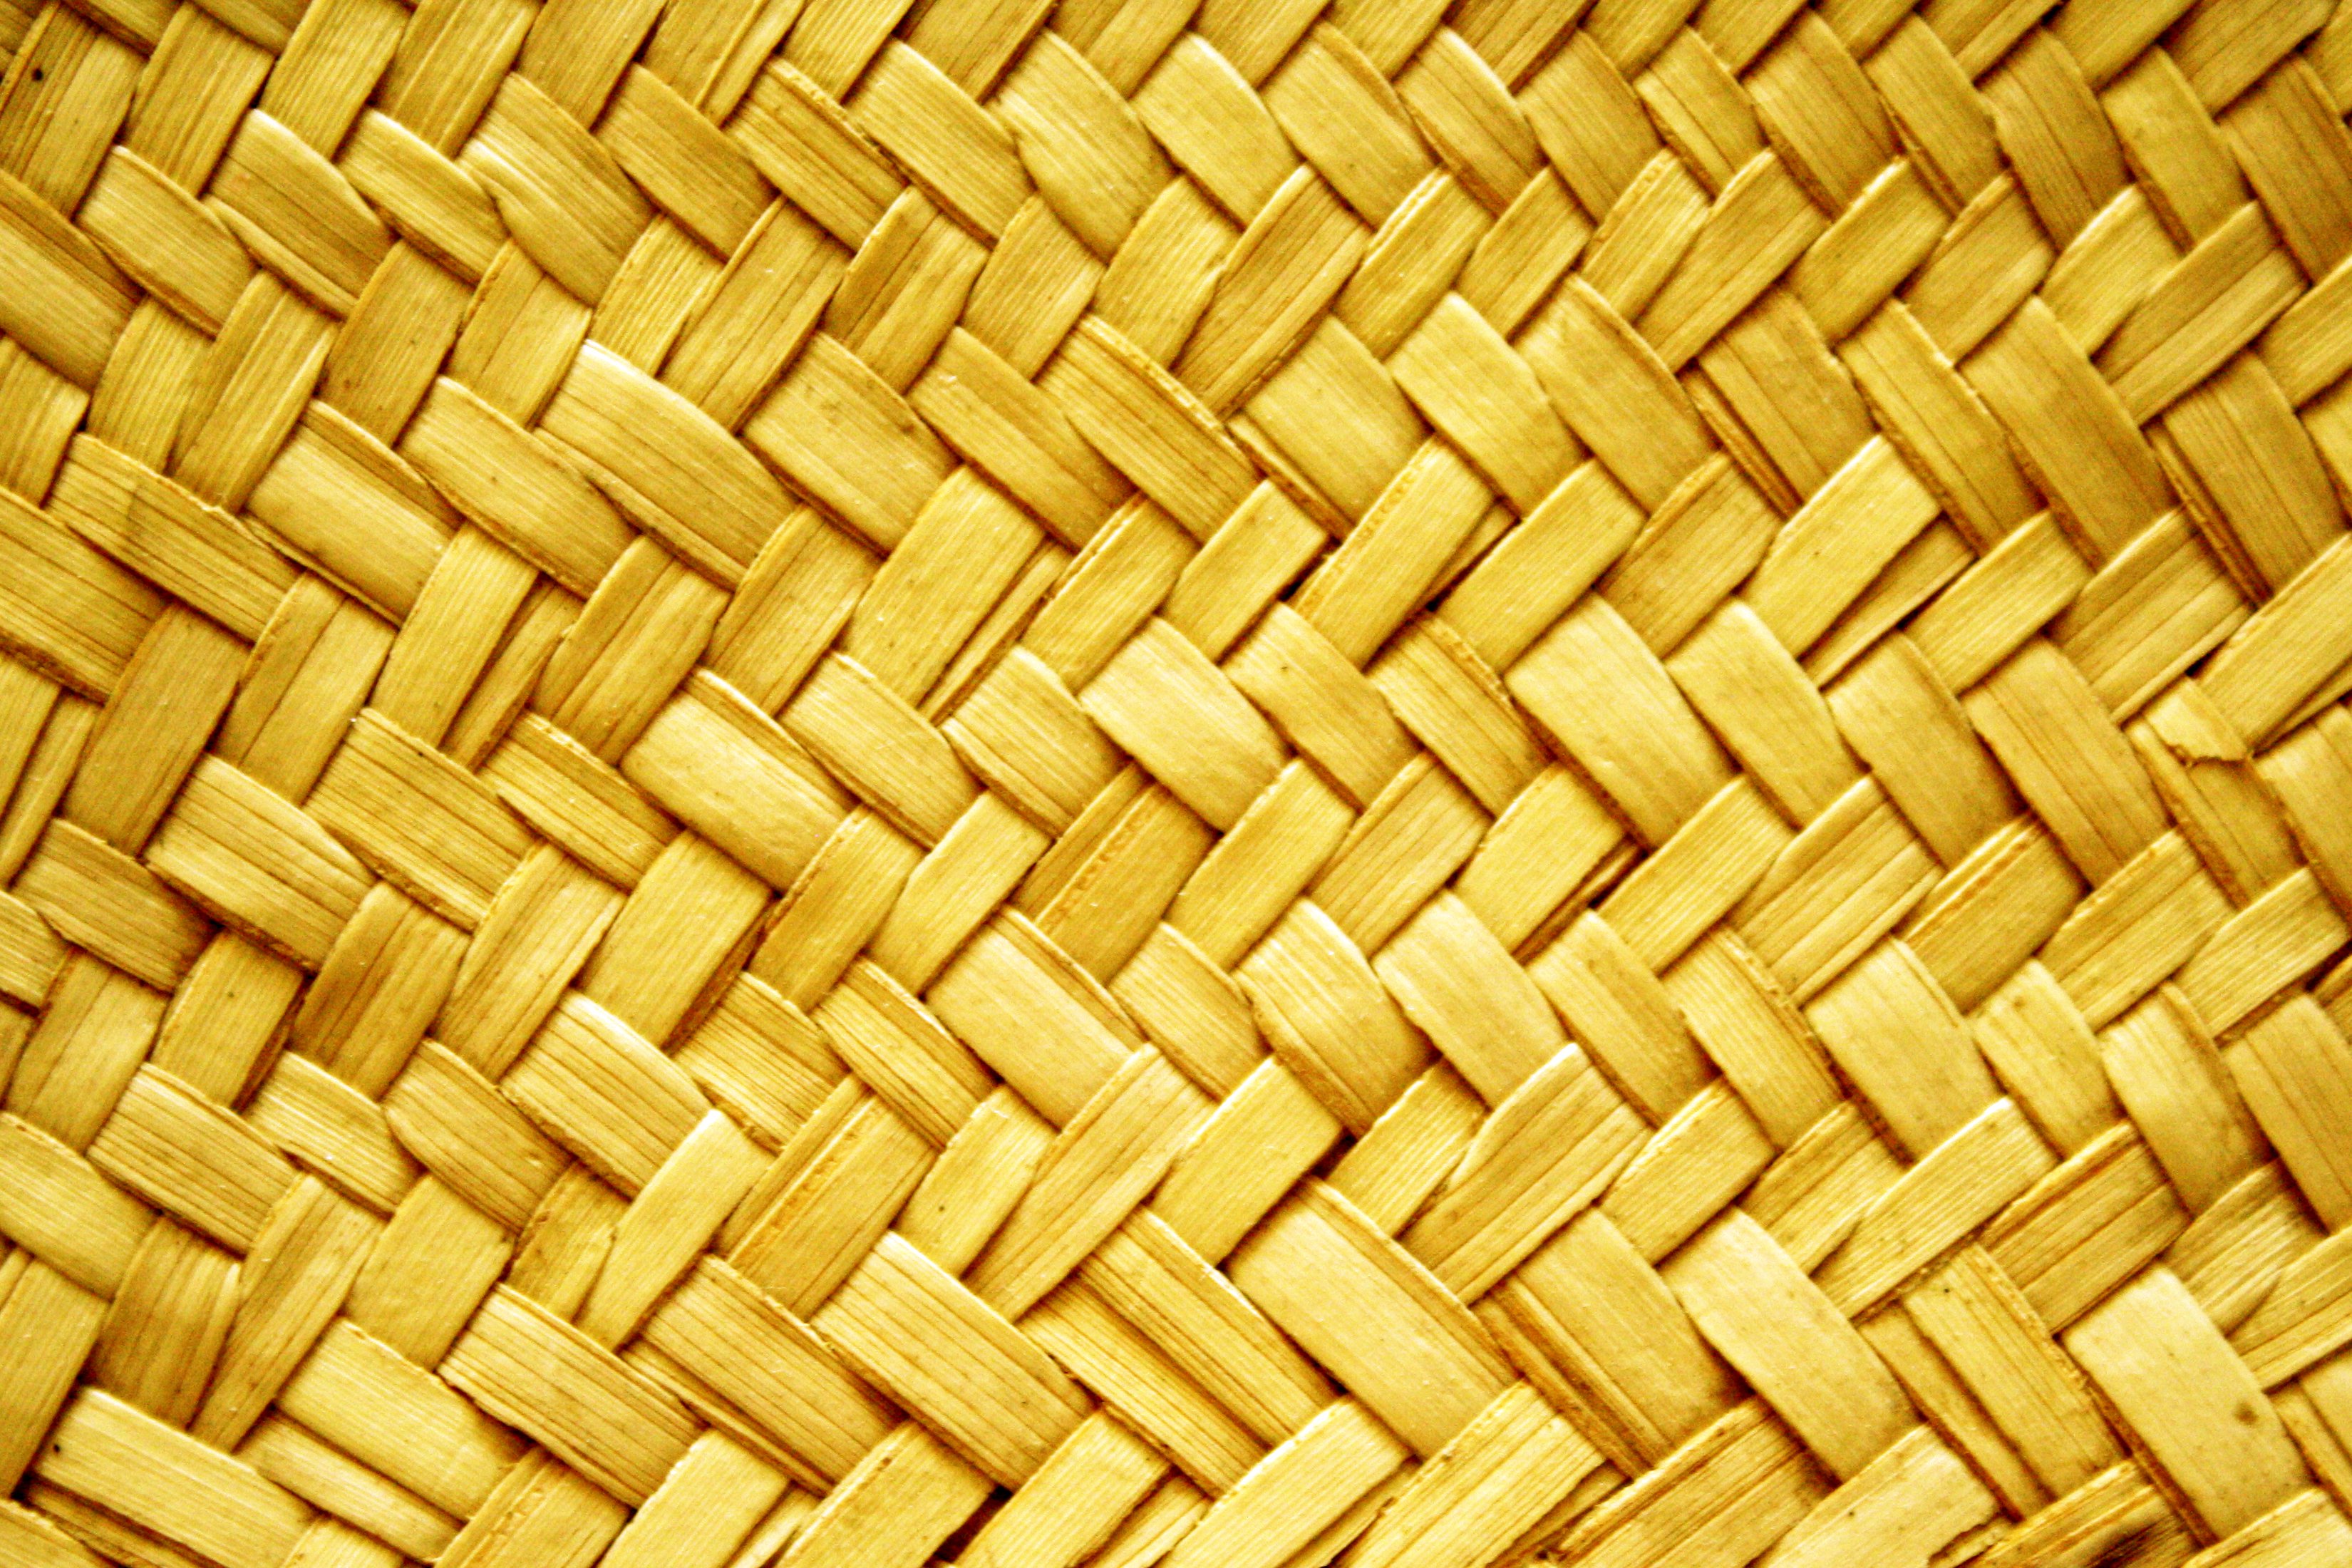 Yellow Woven Straw Texture | Design | Pinterest | Wallpaper ...